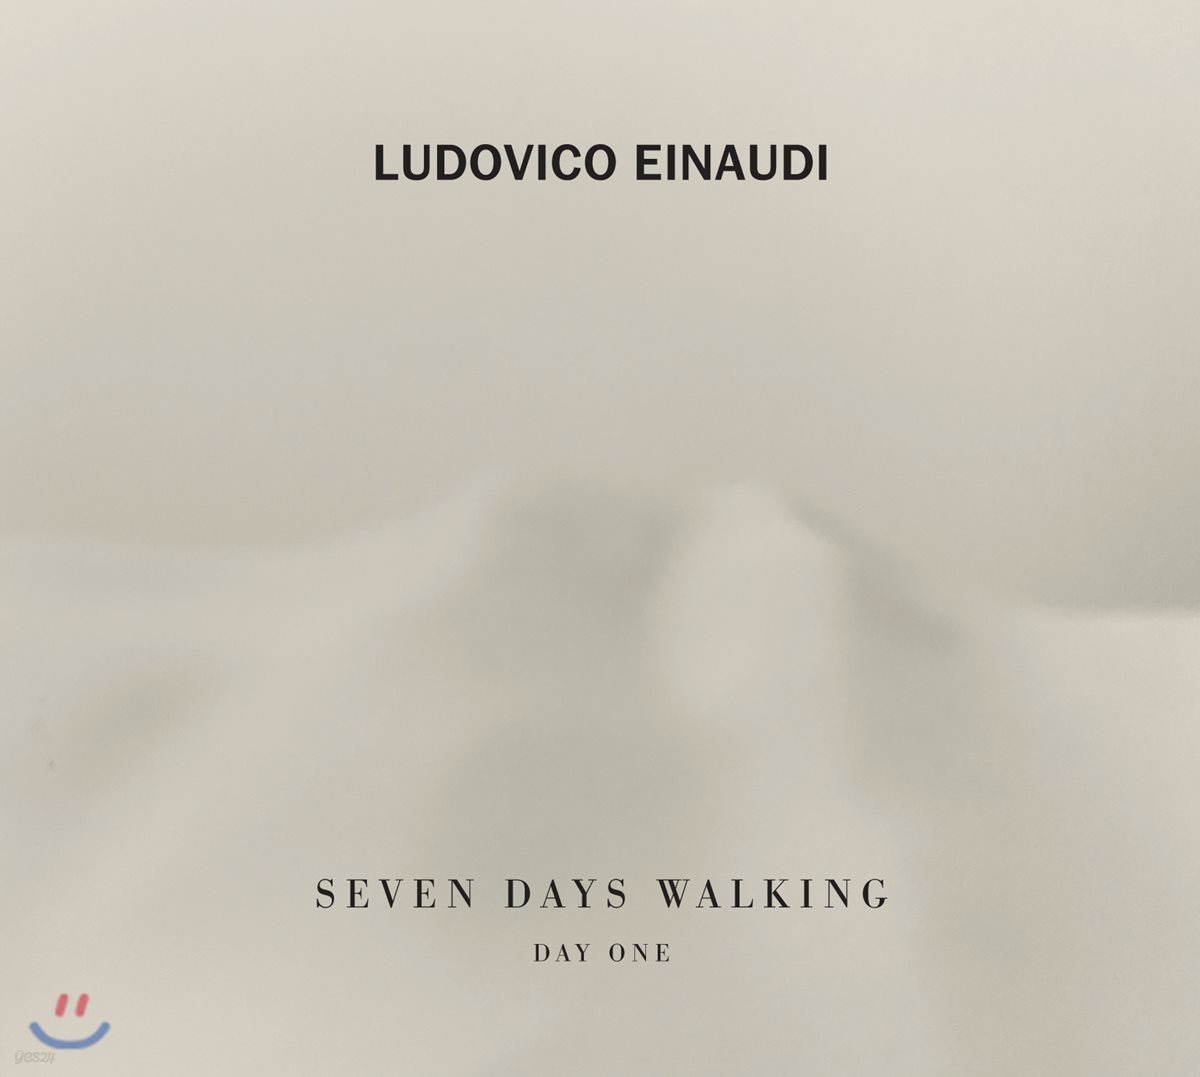 루도비코 에이나우디 - 7일 간의 산책, 첫 번째 날 (Ludovico Einaudi - Seven Days Walking, Day One)